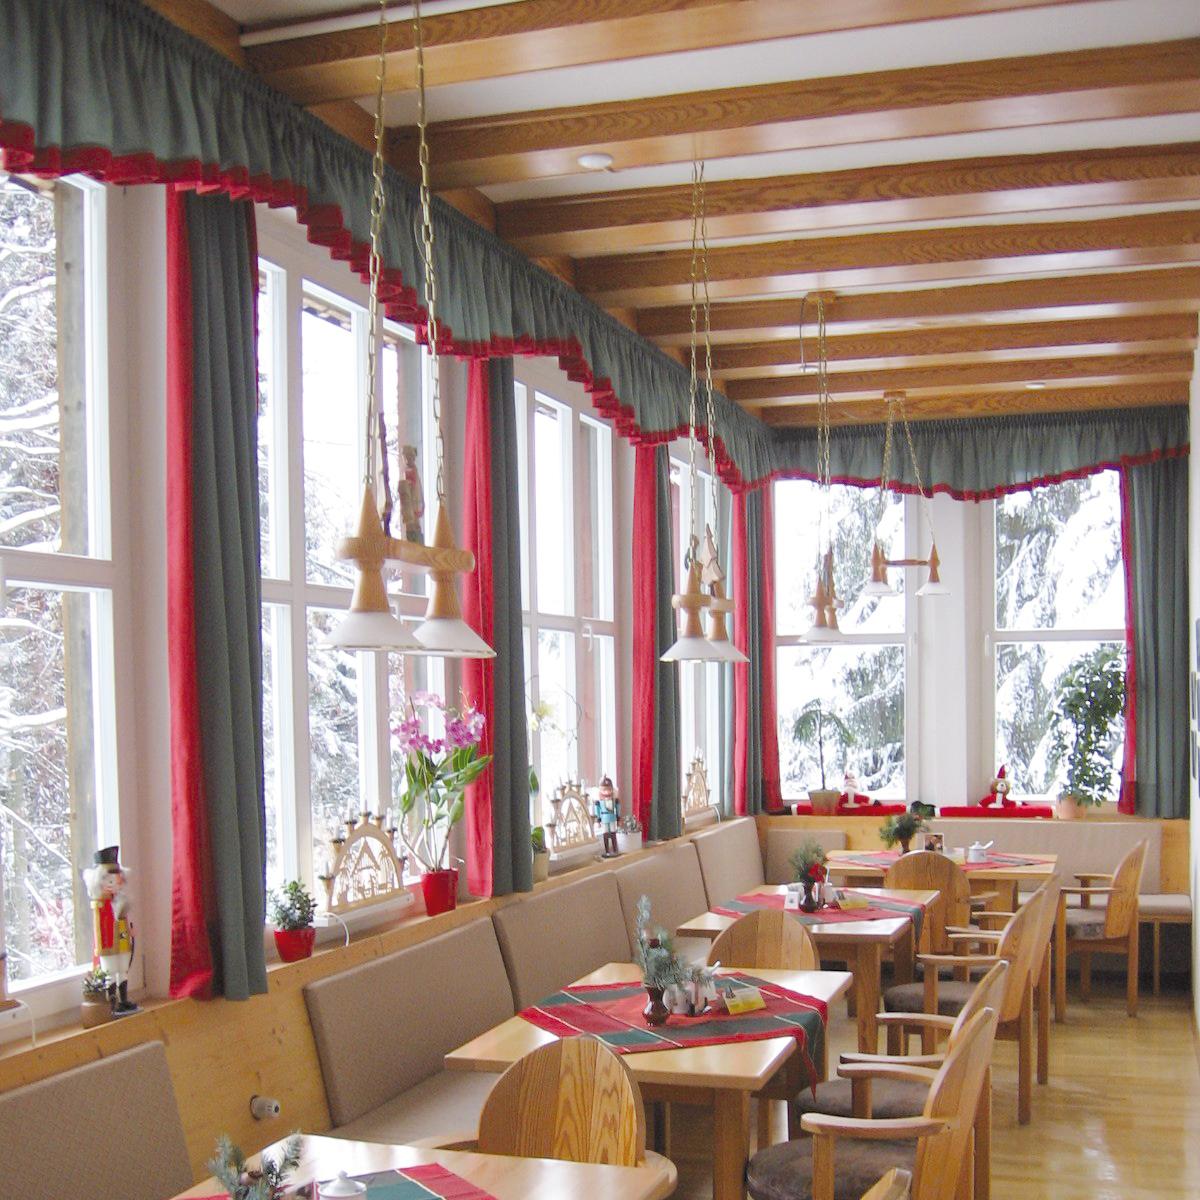 Restaurant "Naturbaude Eschenhof" in Oberwiesenthal